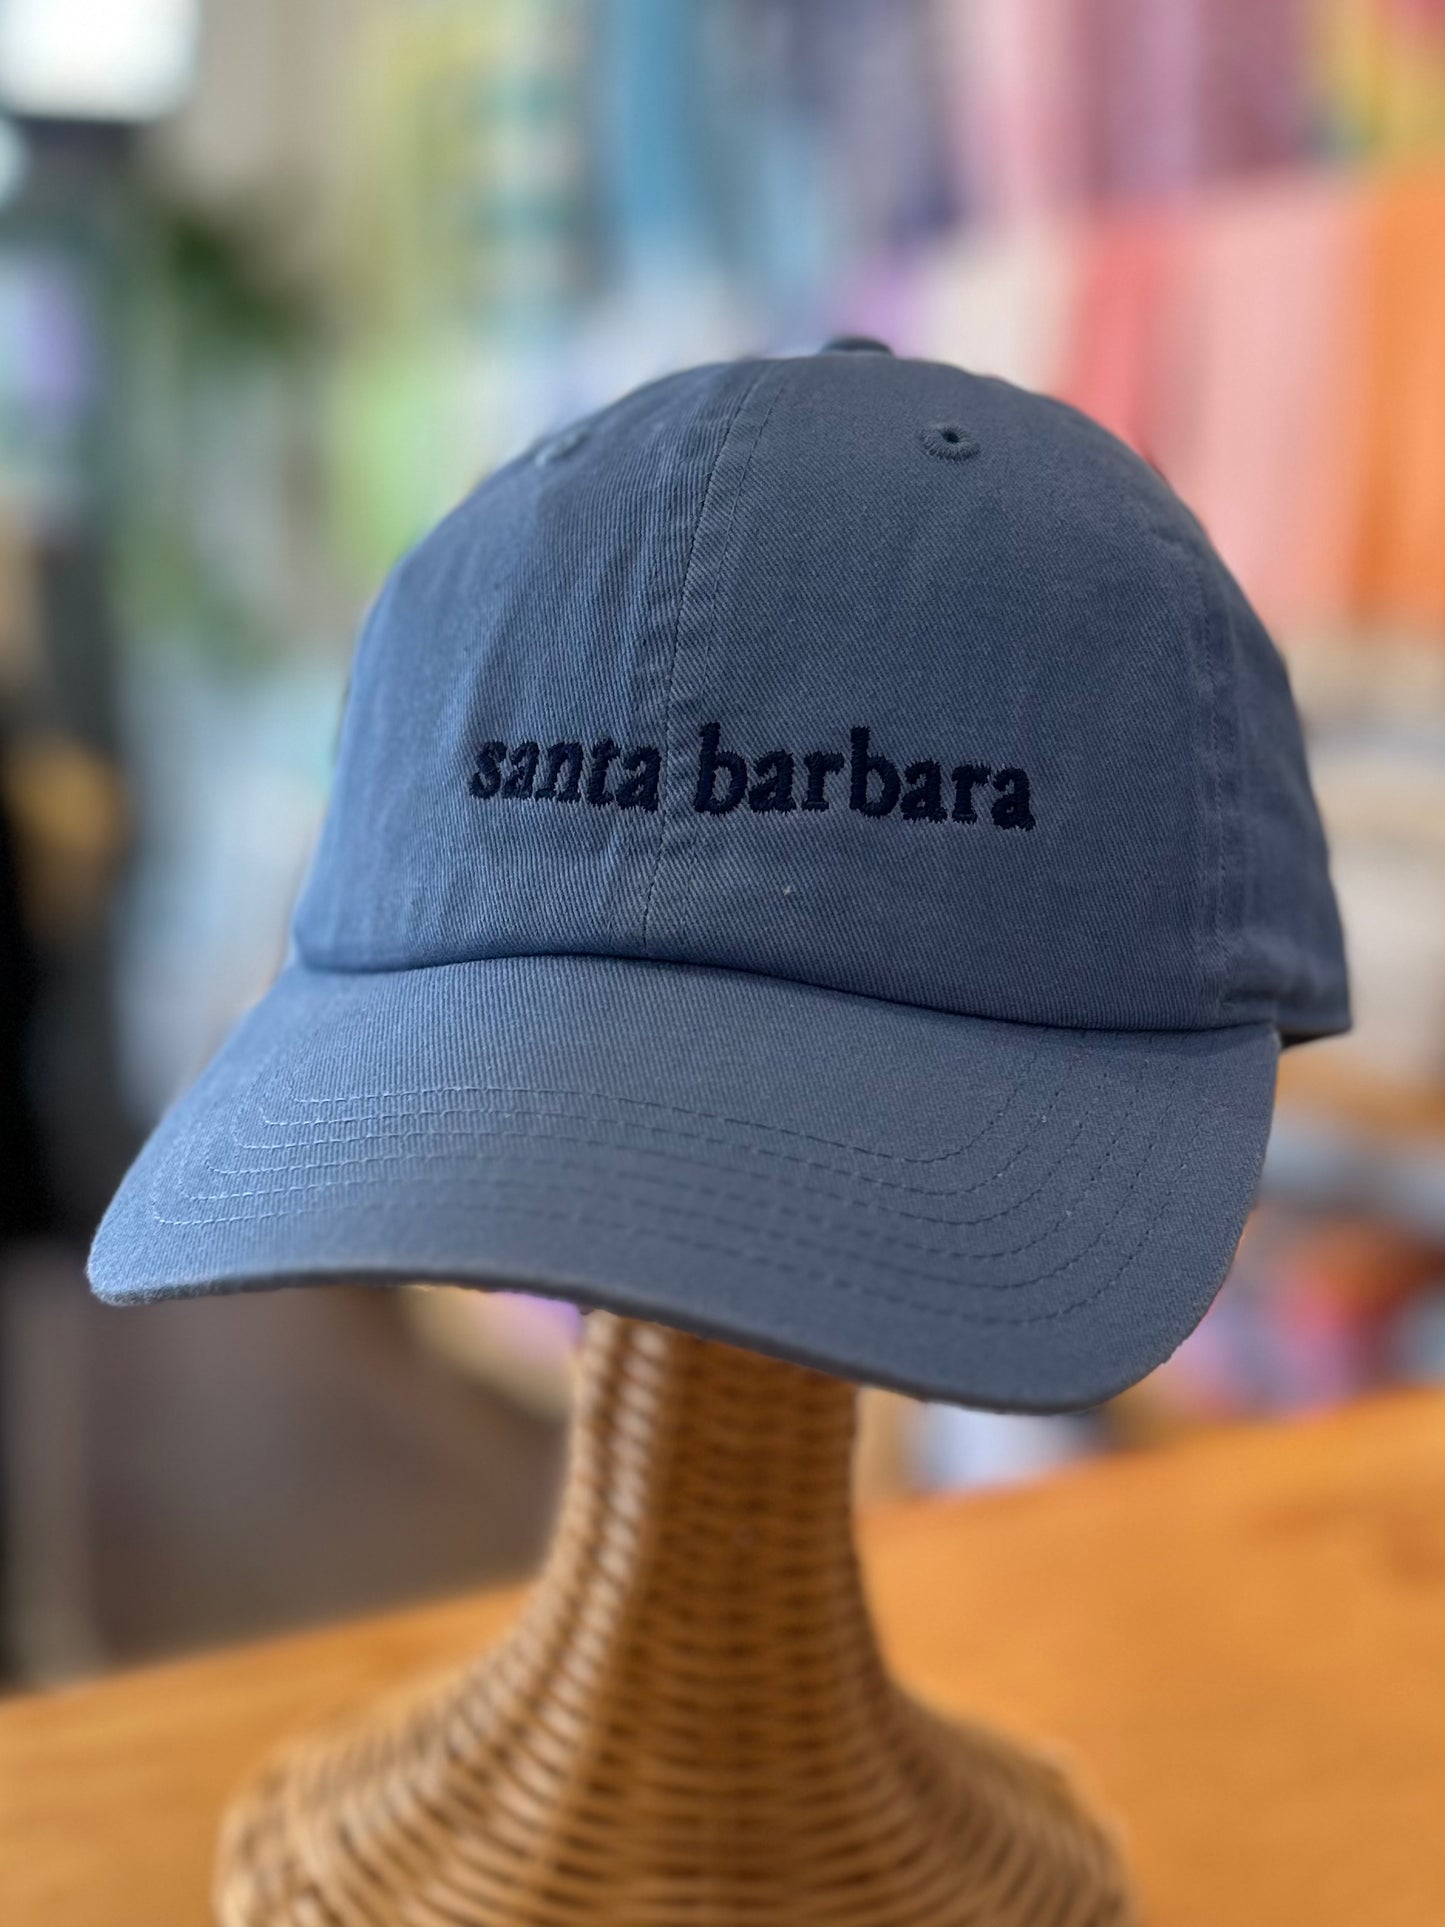 Santa Barbara Embroidered Baseball Cap